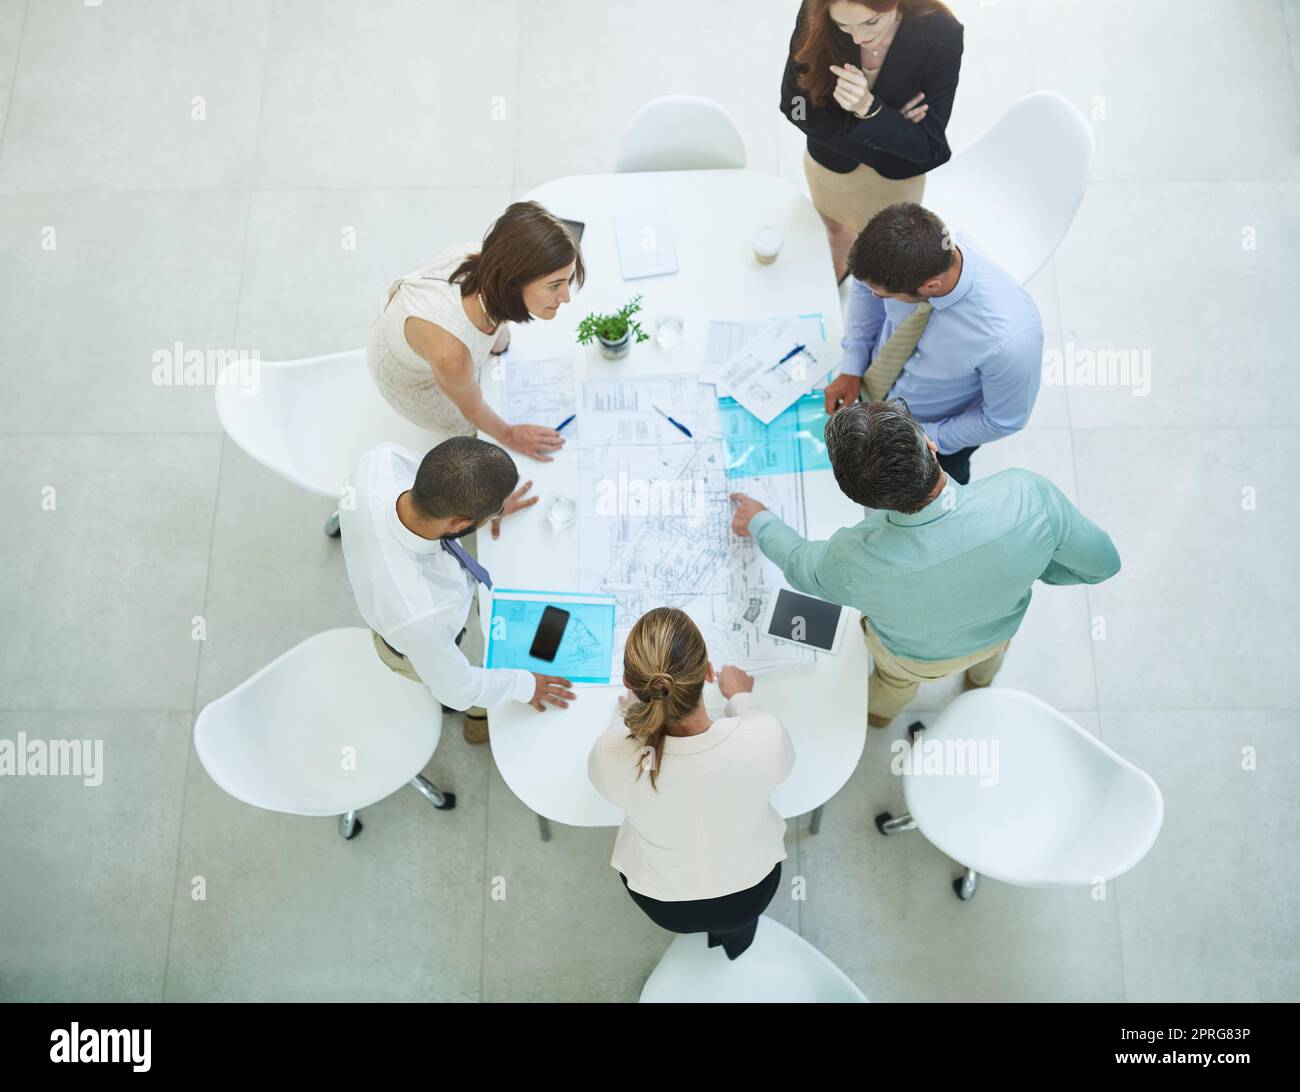 Prendersi cura del business. Immagine ad angolo alto di un gruppo di uomini d'affari che si riunano in ufficio. Foto Stock